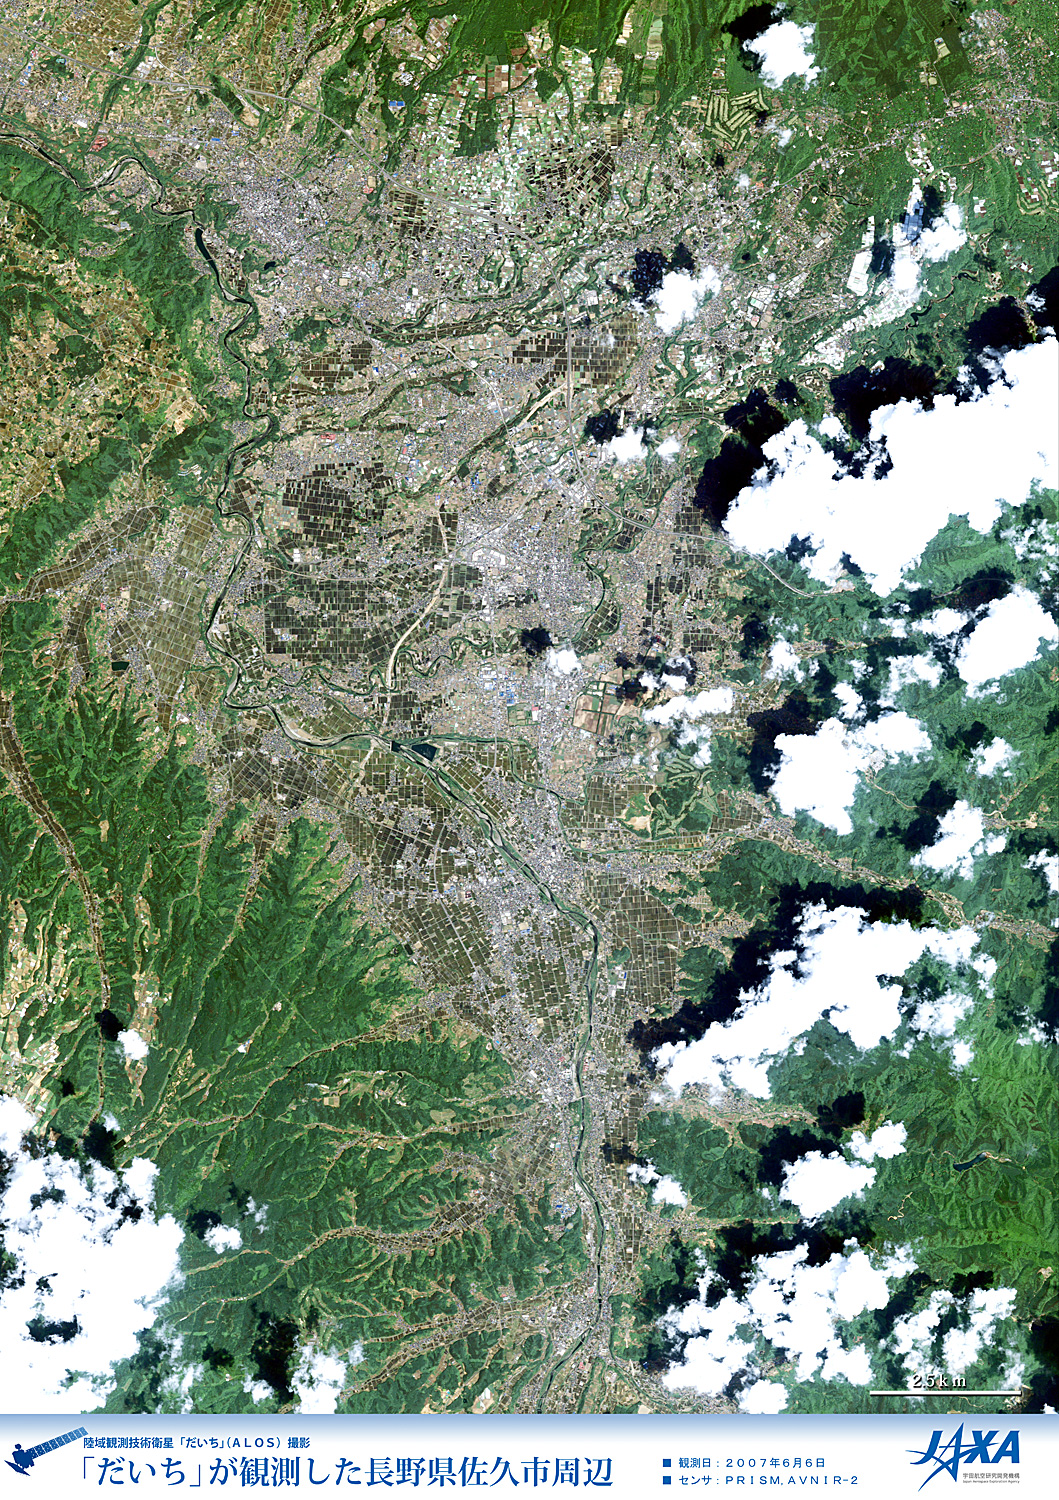 だいちから見た日本の都市 佐久市周辺:衛星画像（ポスター仕上げ）